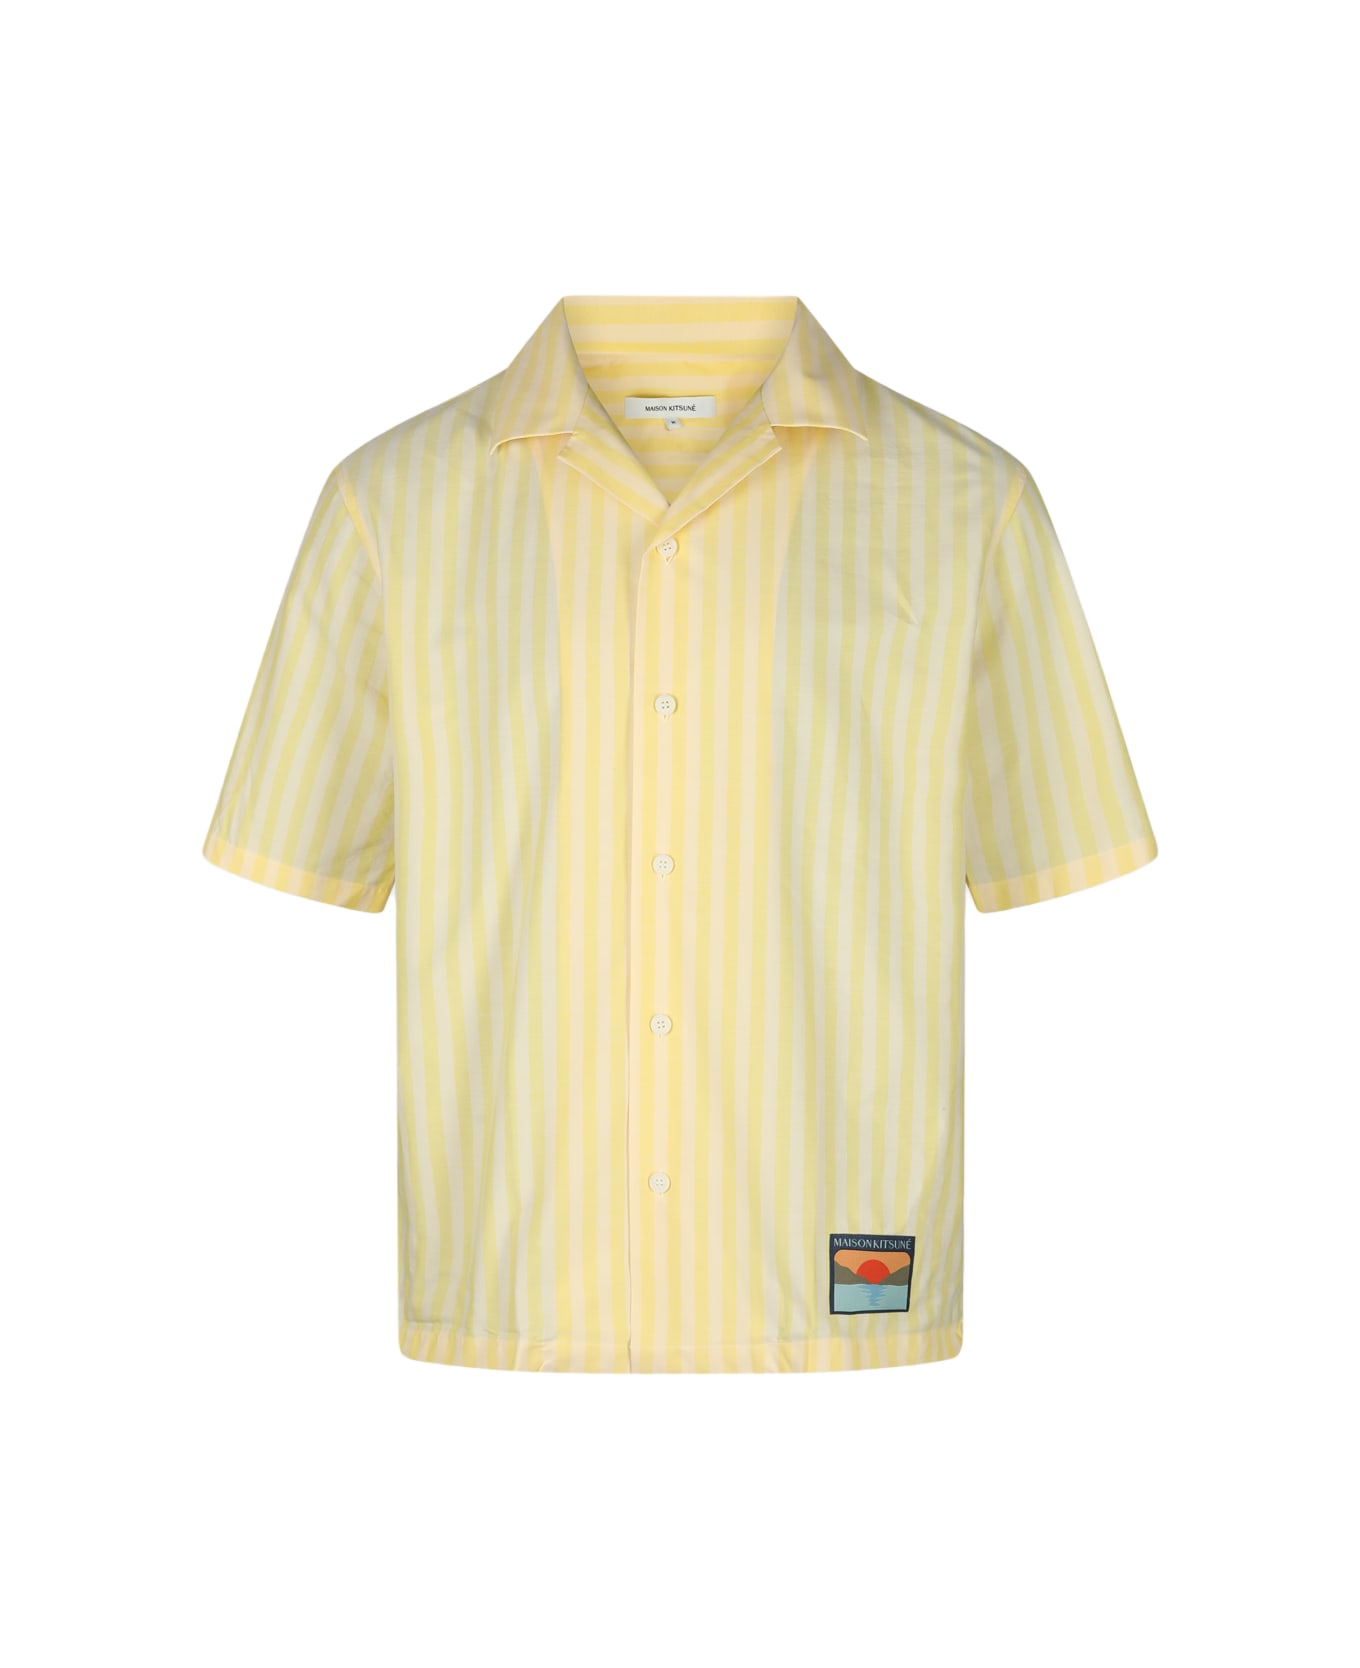 Maison Kitsuné Light Yellow Shirt - S720 LIGHT YELLOW STRIPES